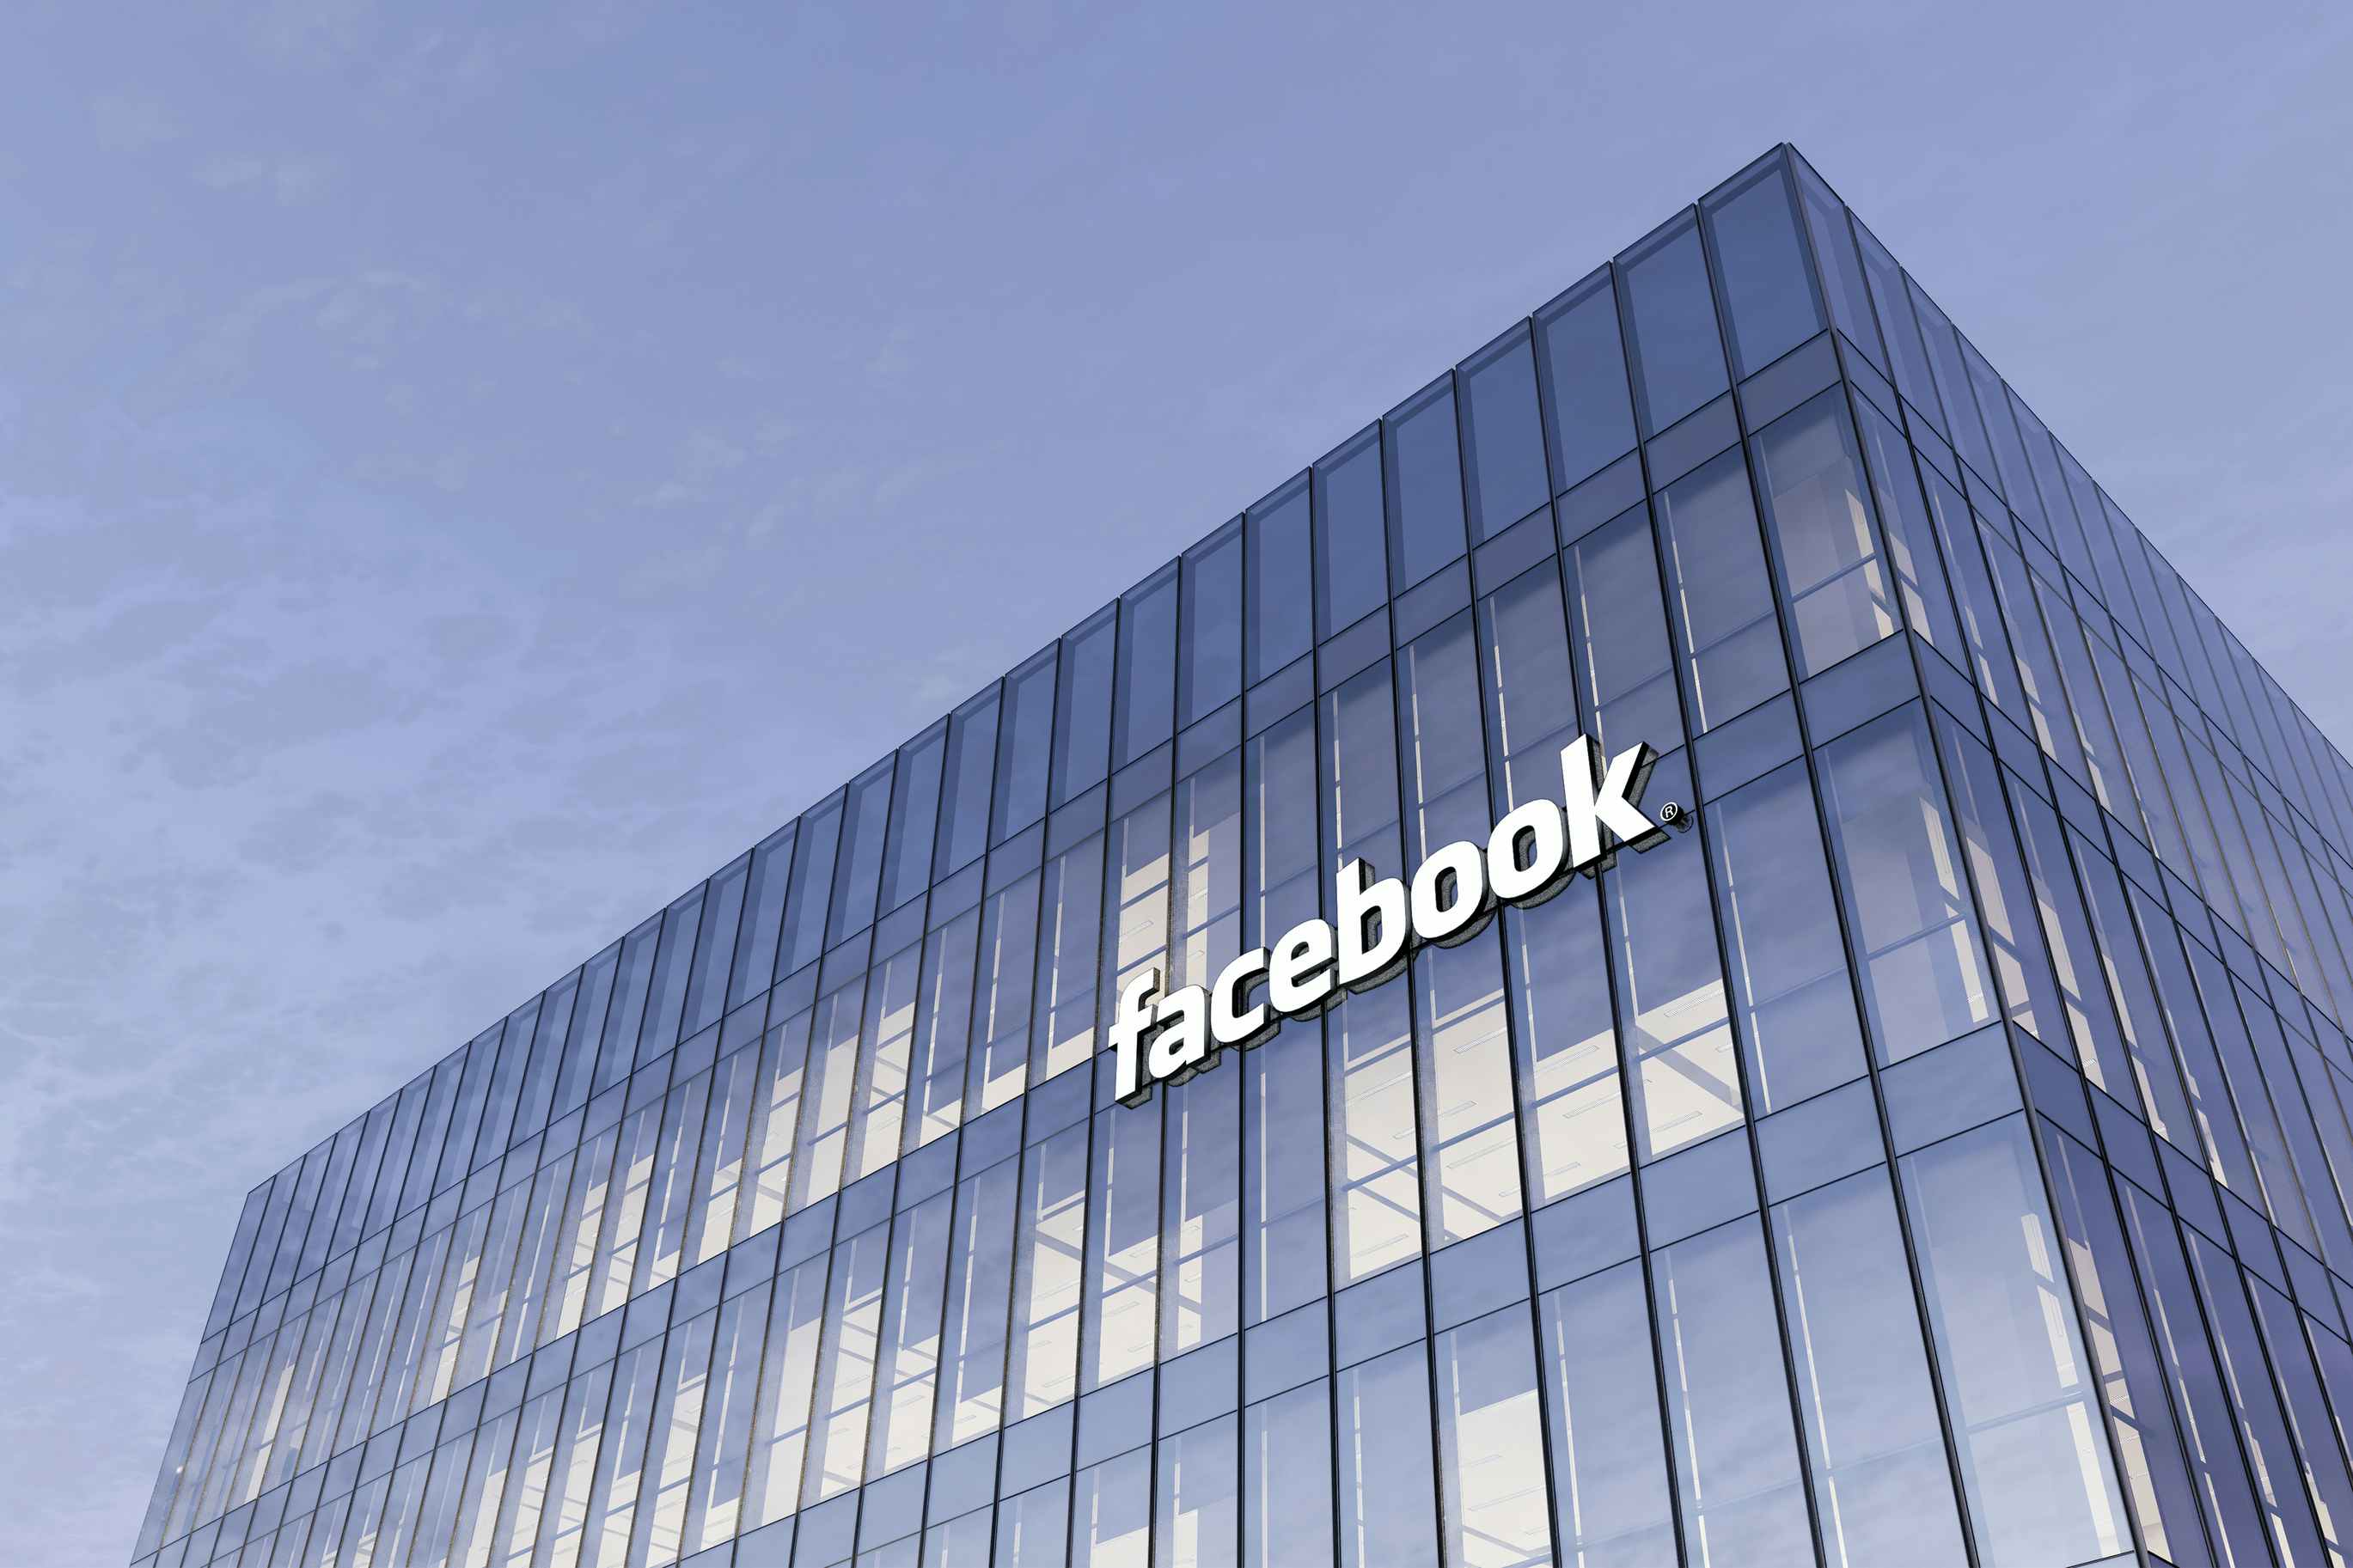 Facebook headquarters in California